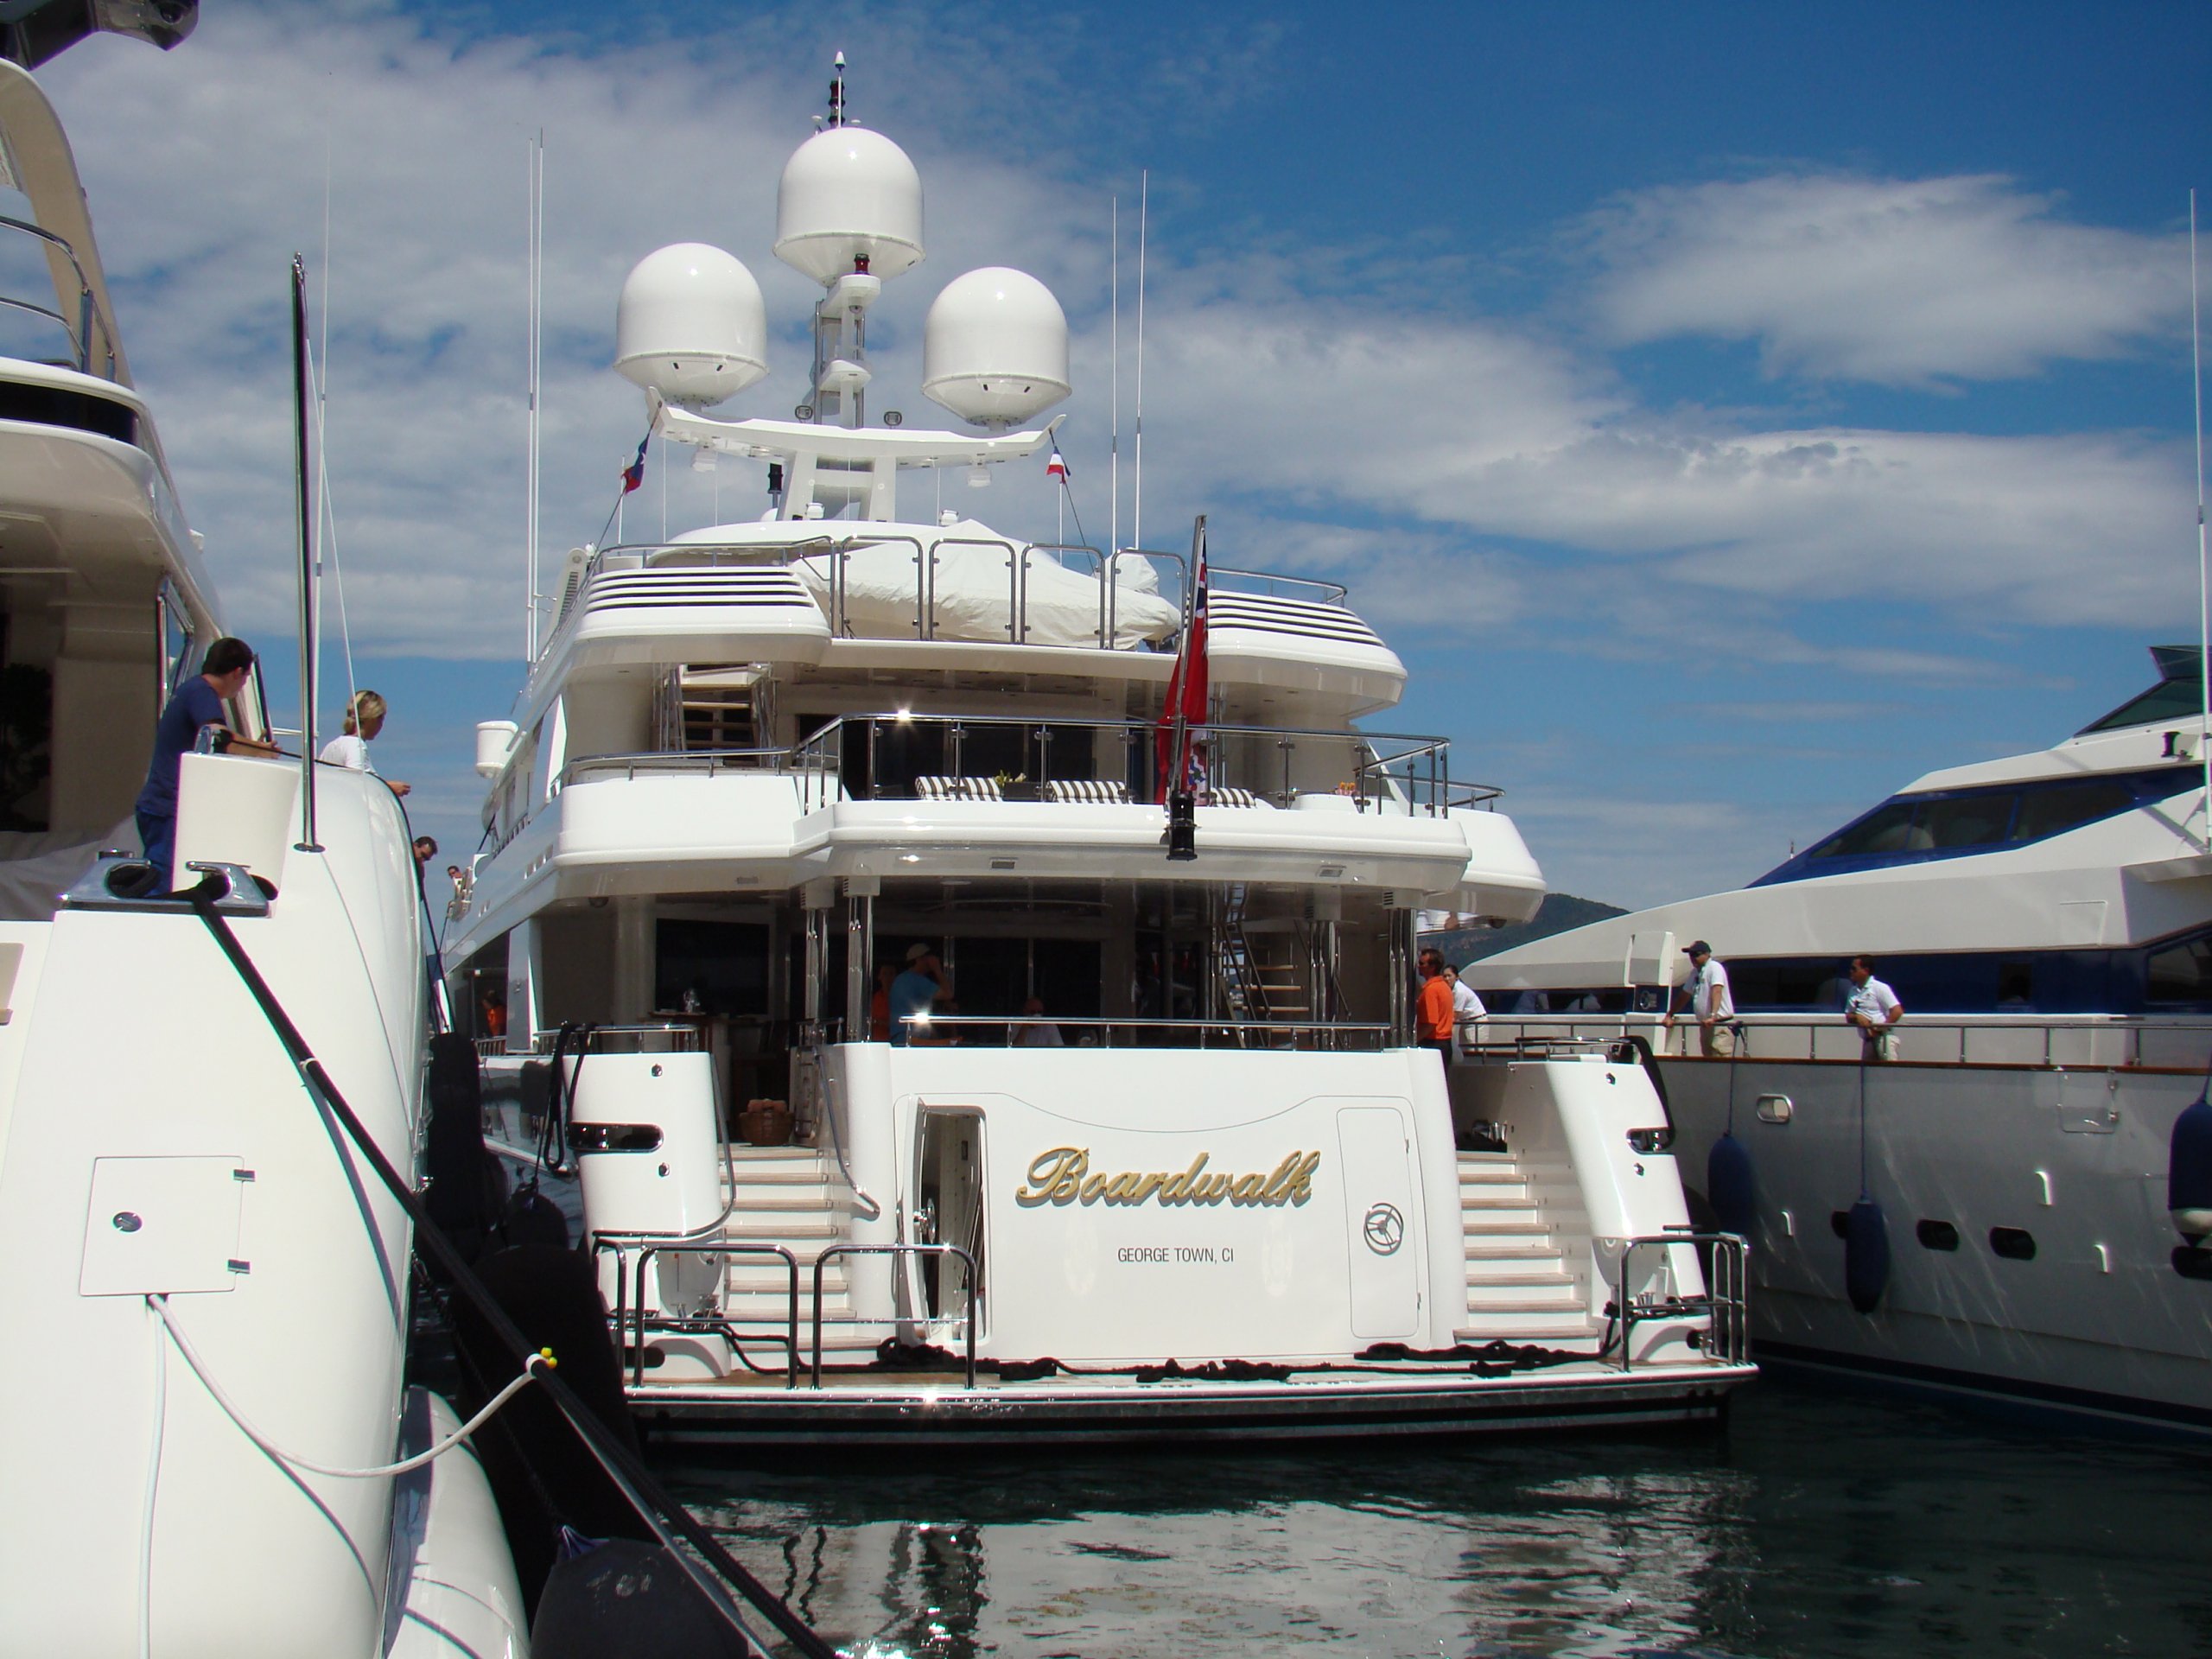 BOARDWALK Yacht • Westport • 2010 • Owner Tilman Fertitta